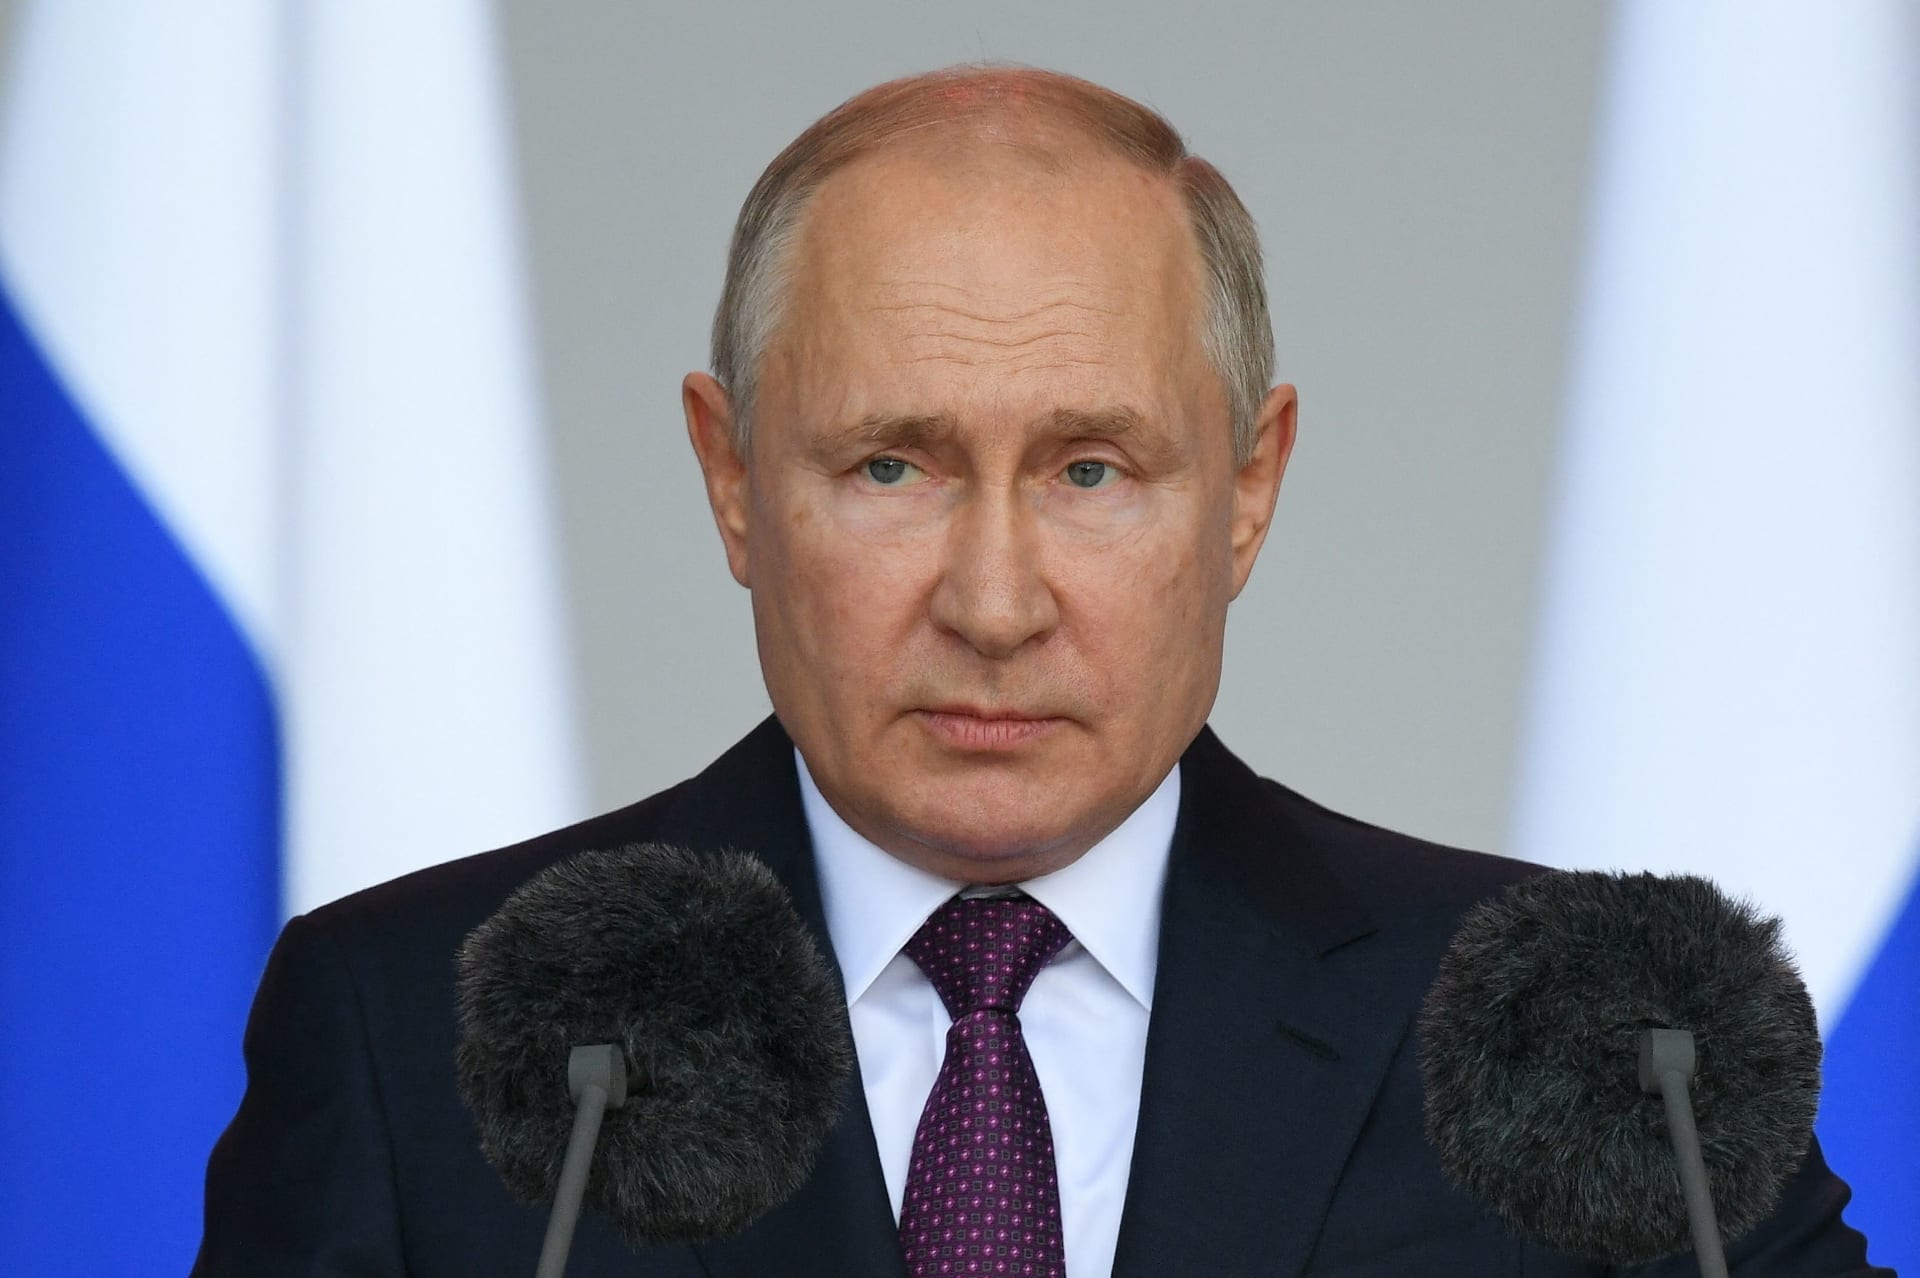 تحليل: بوتين يحقق فوزاً مدوياً.. لكن ما هي الخطوة التالية بالنسبة لروسيا؟